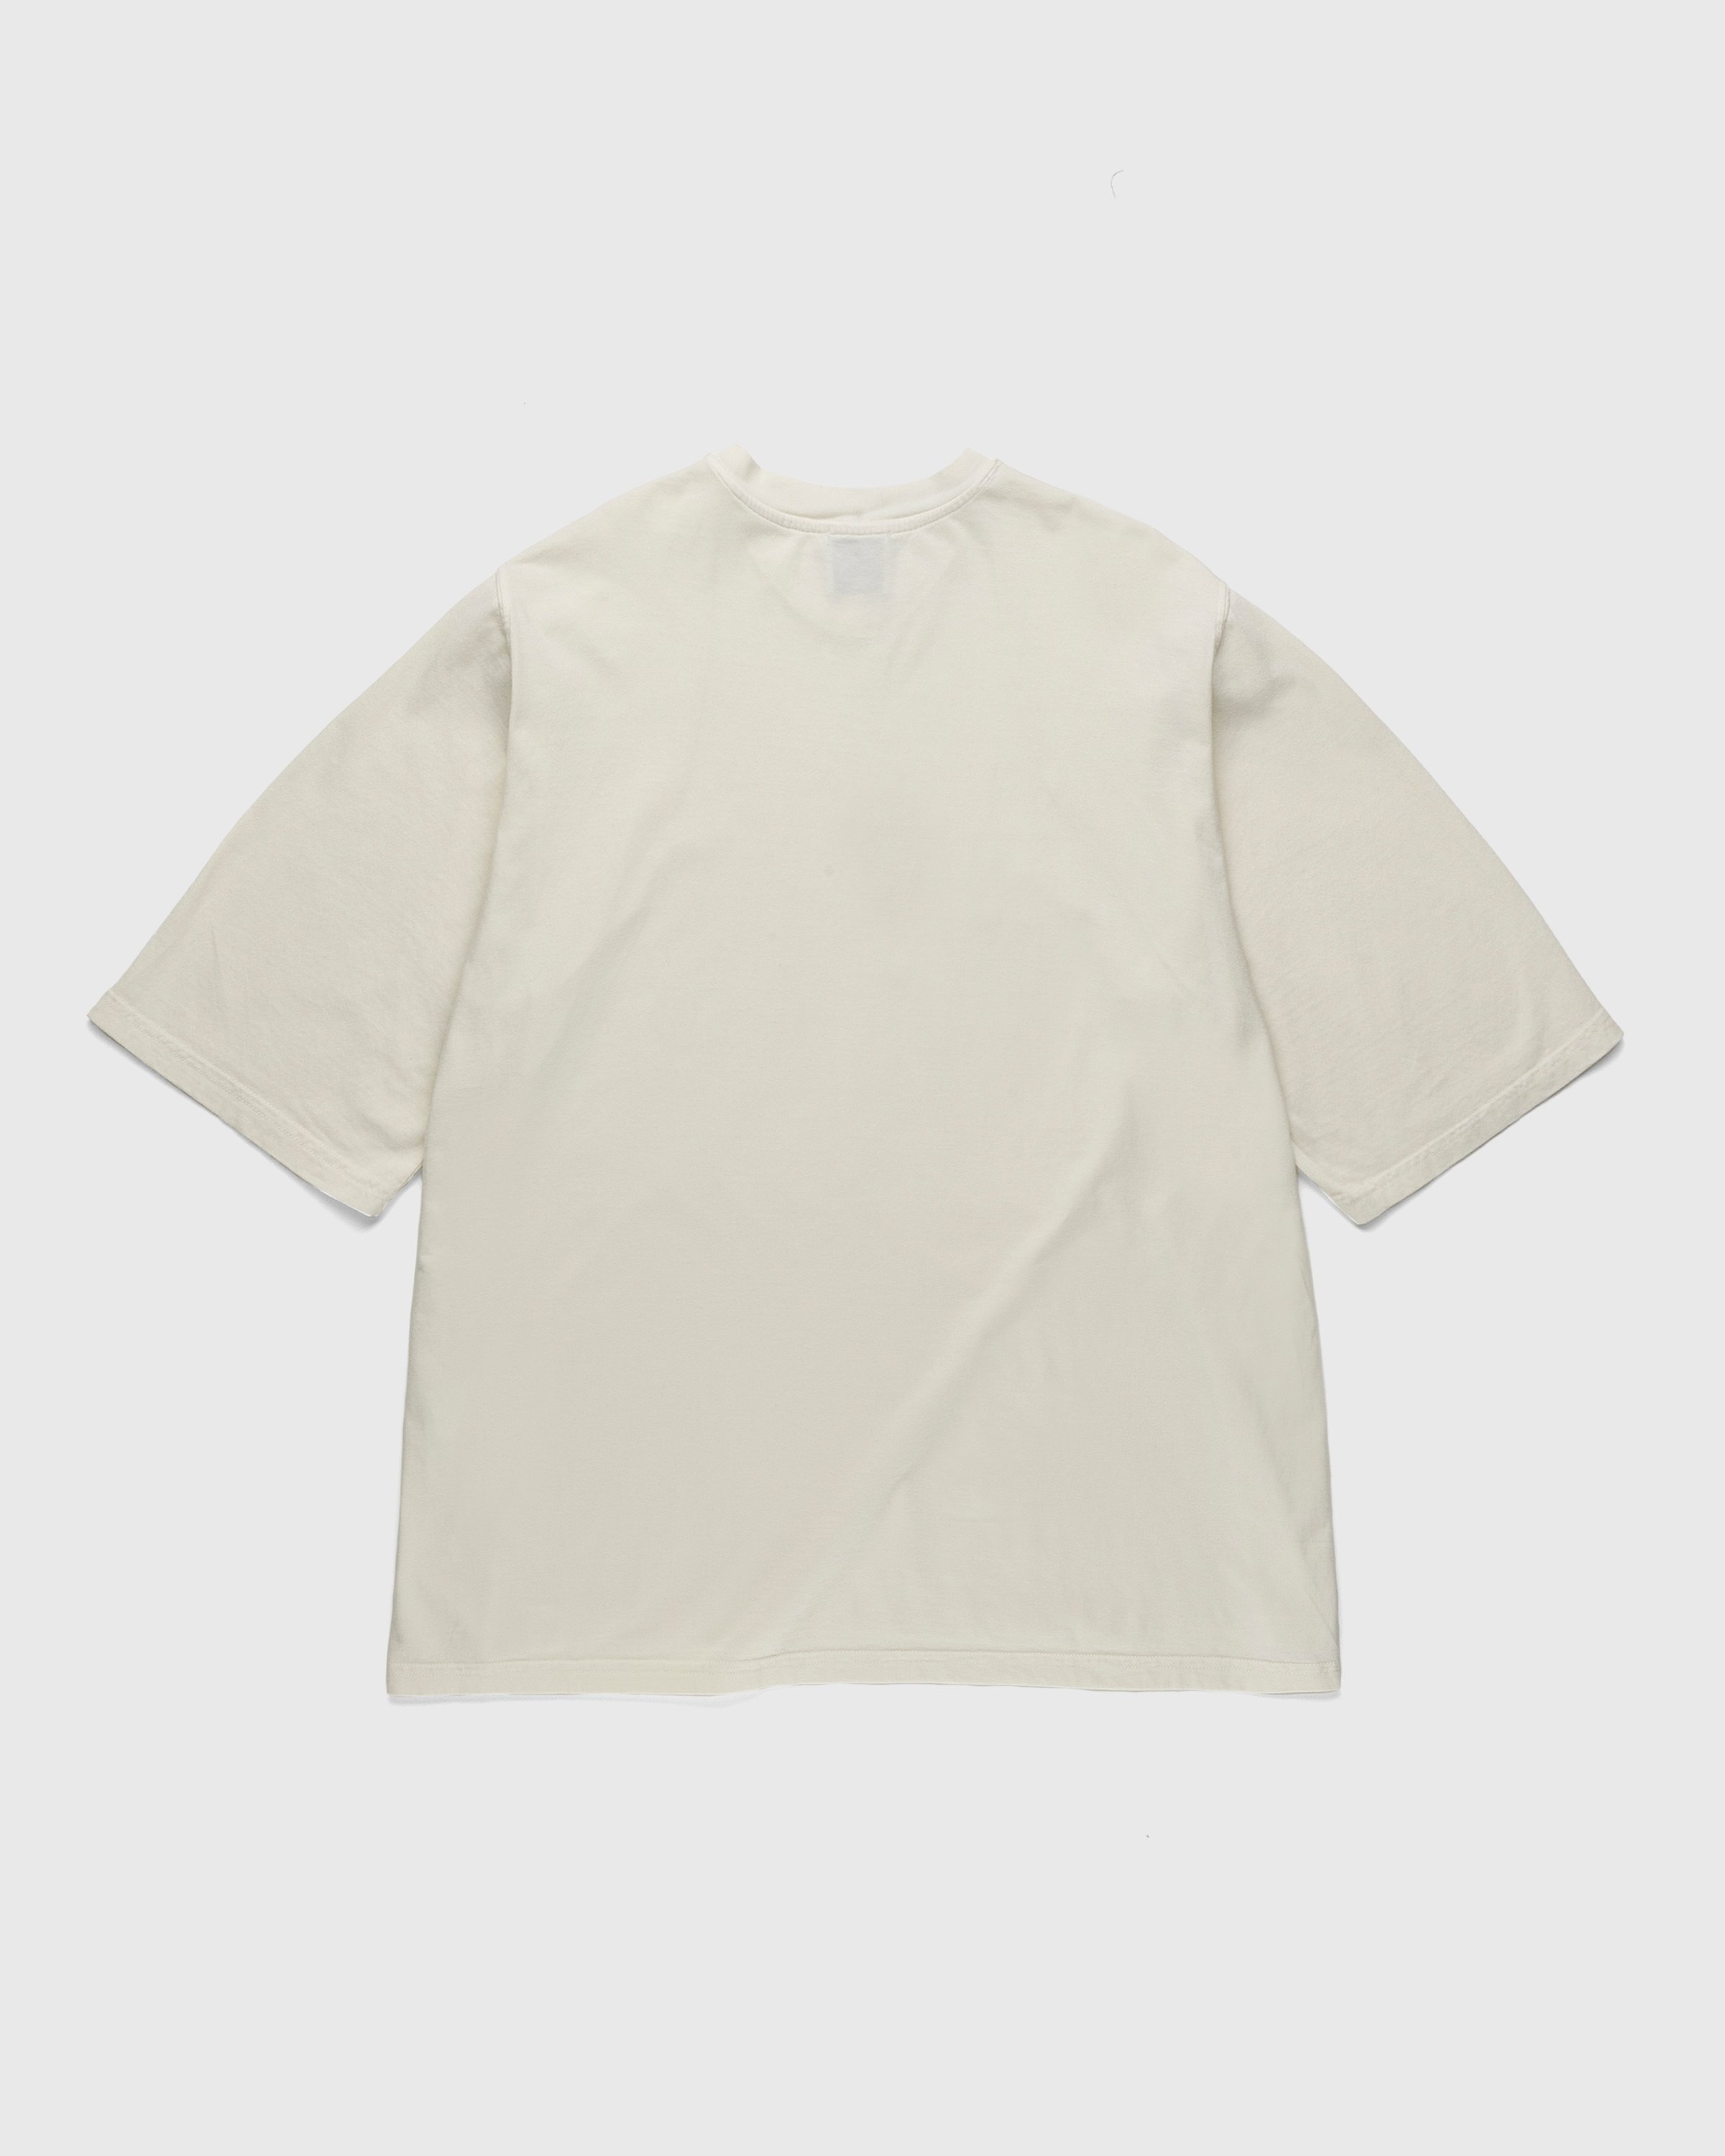 Lourdes New York – Skyline Tee Tinto Capo Cream - T-shirts - White - Image 2